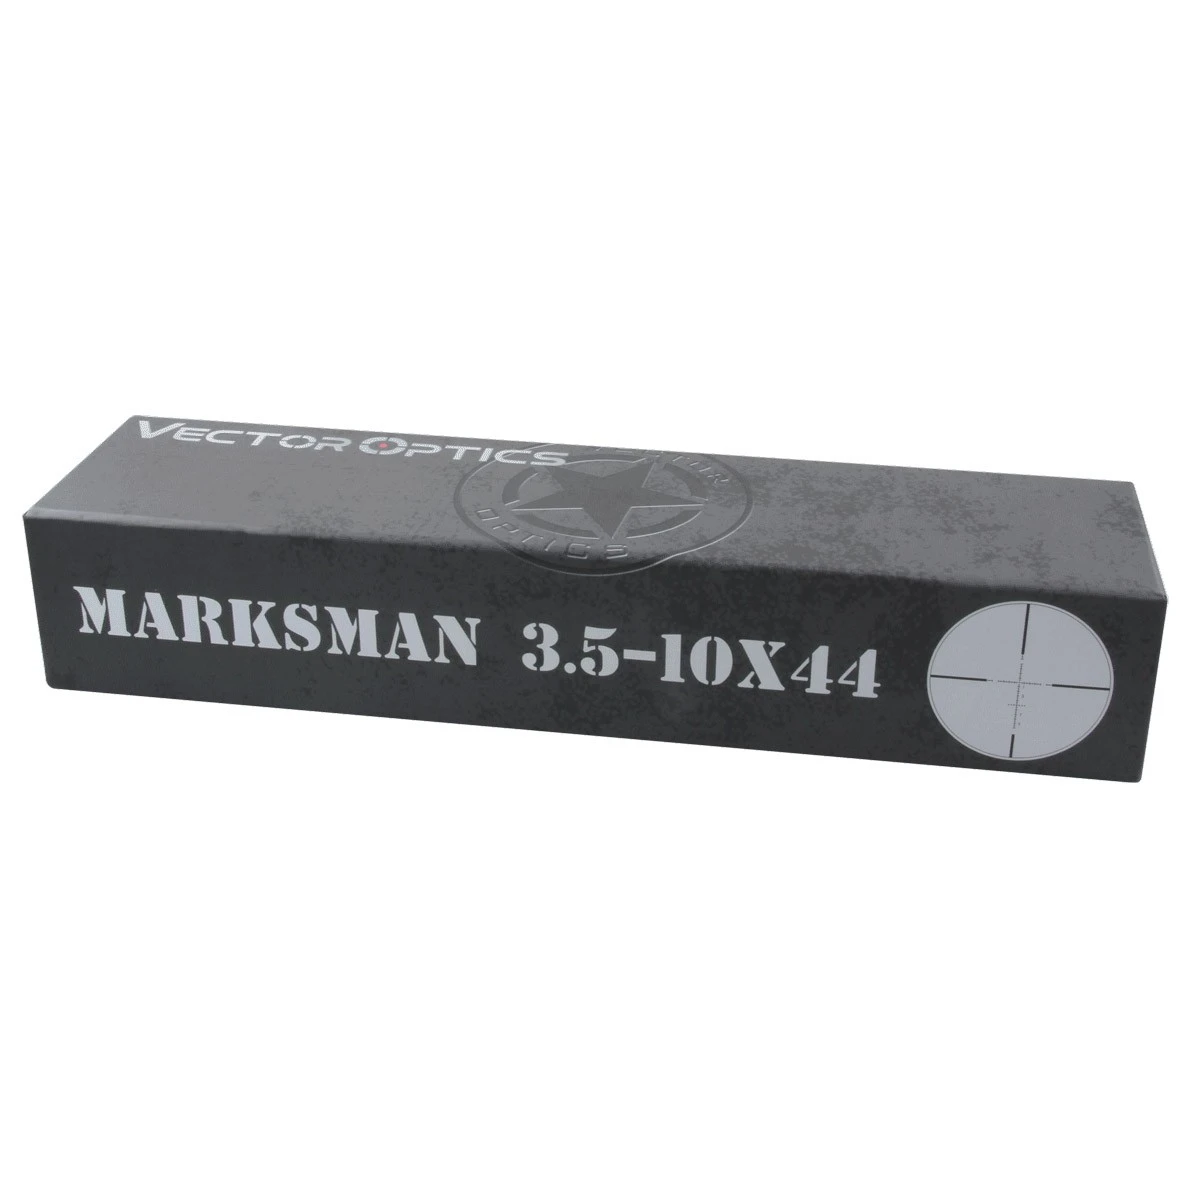 Vector Optics Marksman 3 5 10x44 охотничий прицел тактический фокус 10yds 1/10 MIL Fit пневматический и